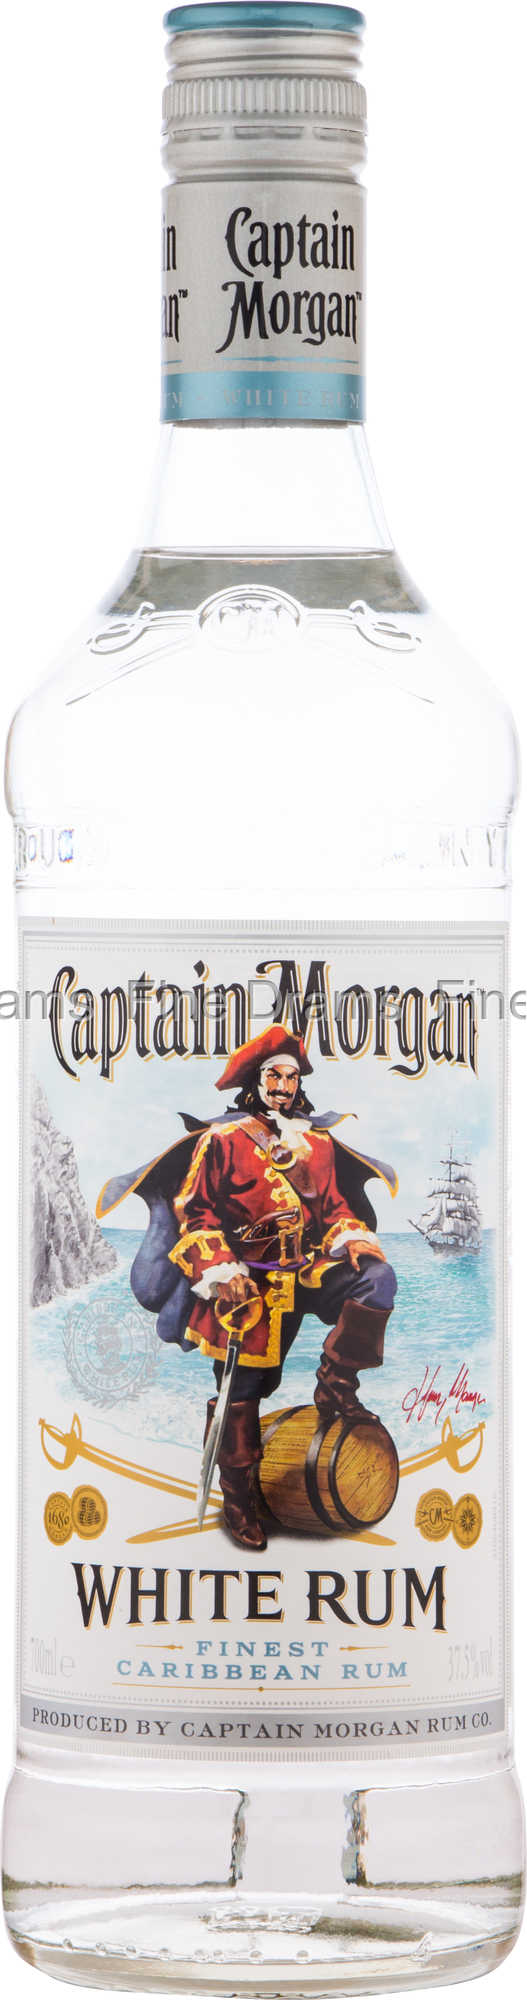 White Rum Morgan Captain